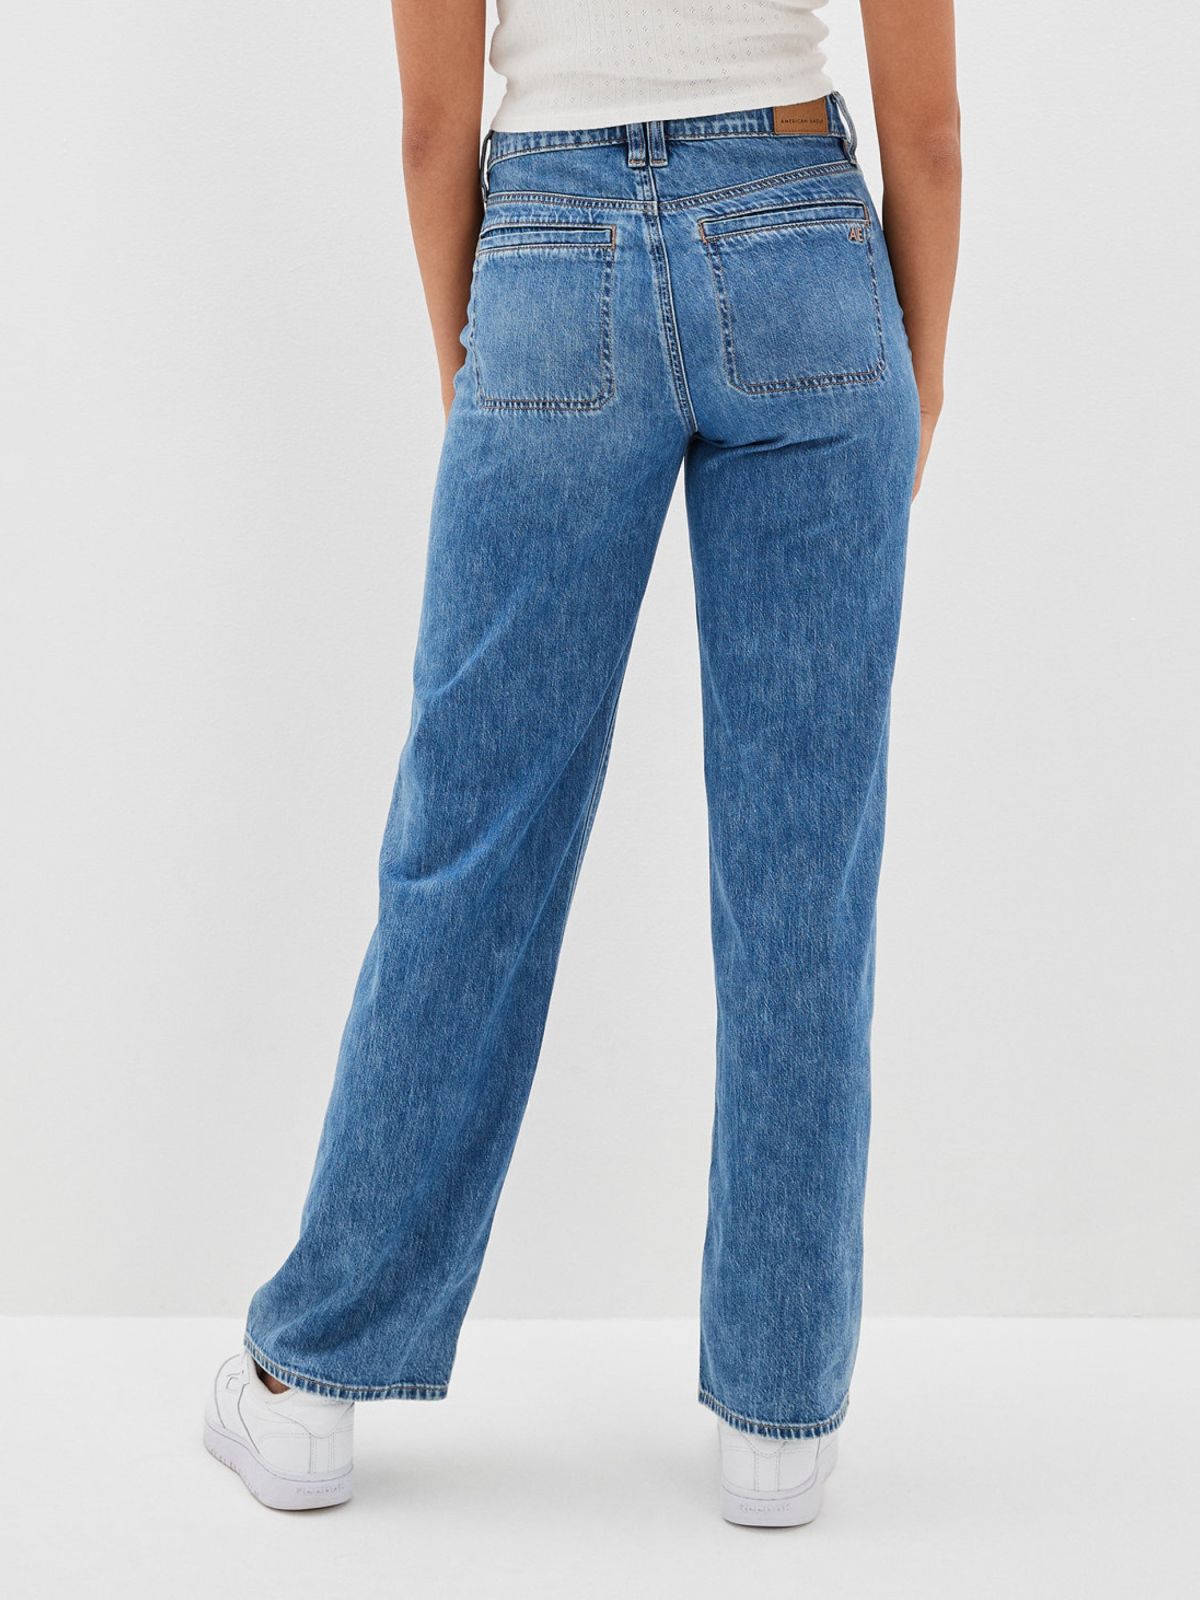  ג'ינס ארוך מתרחב / נשים של AMERICAN EAGLE